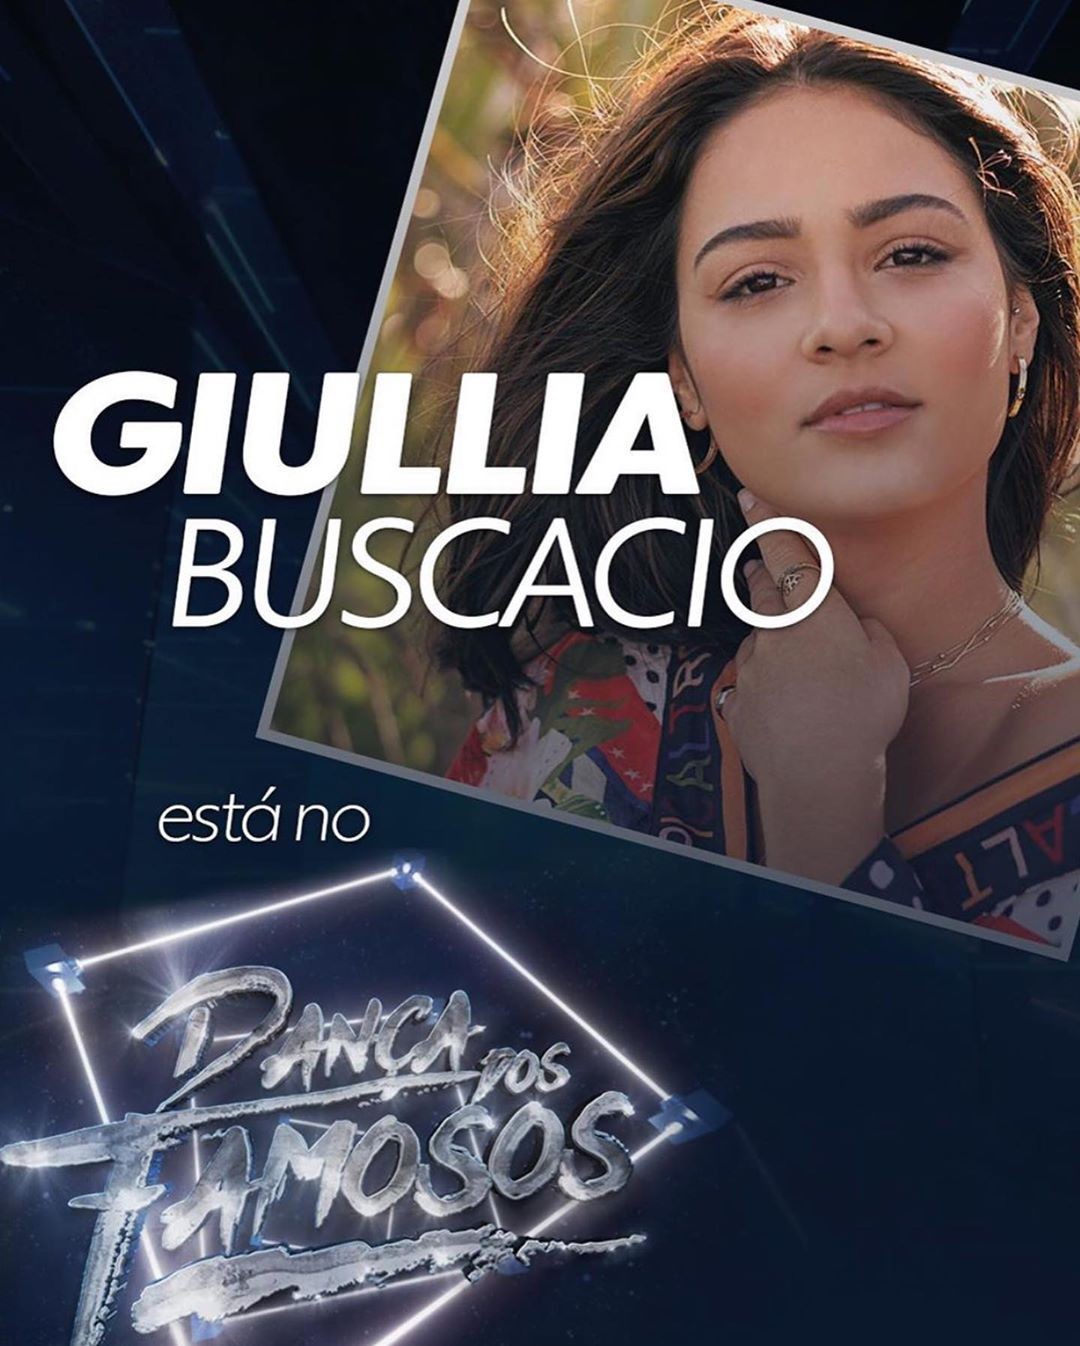 Giullia Buscacio estará no Dança dos Famosos (Foto: Reprodução/Instagram)